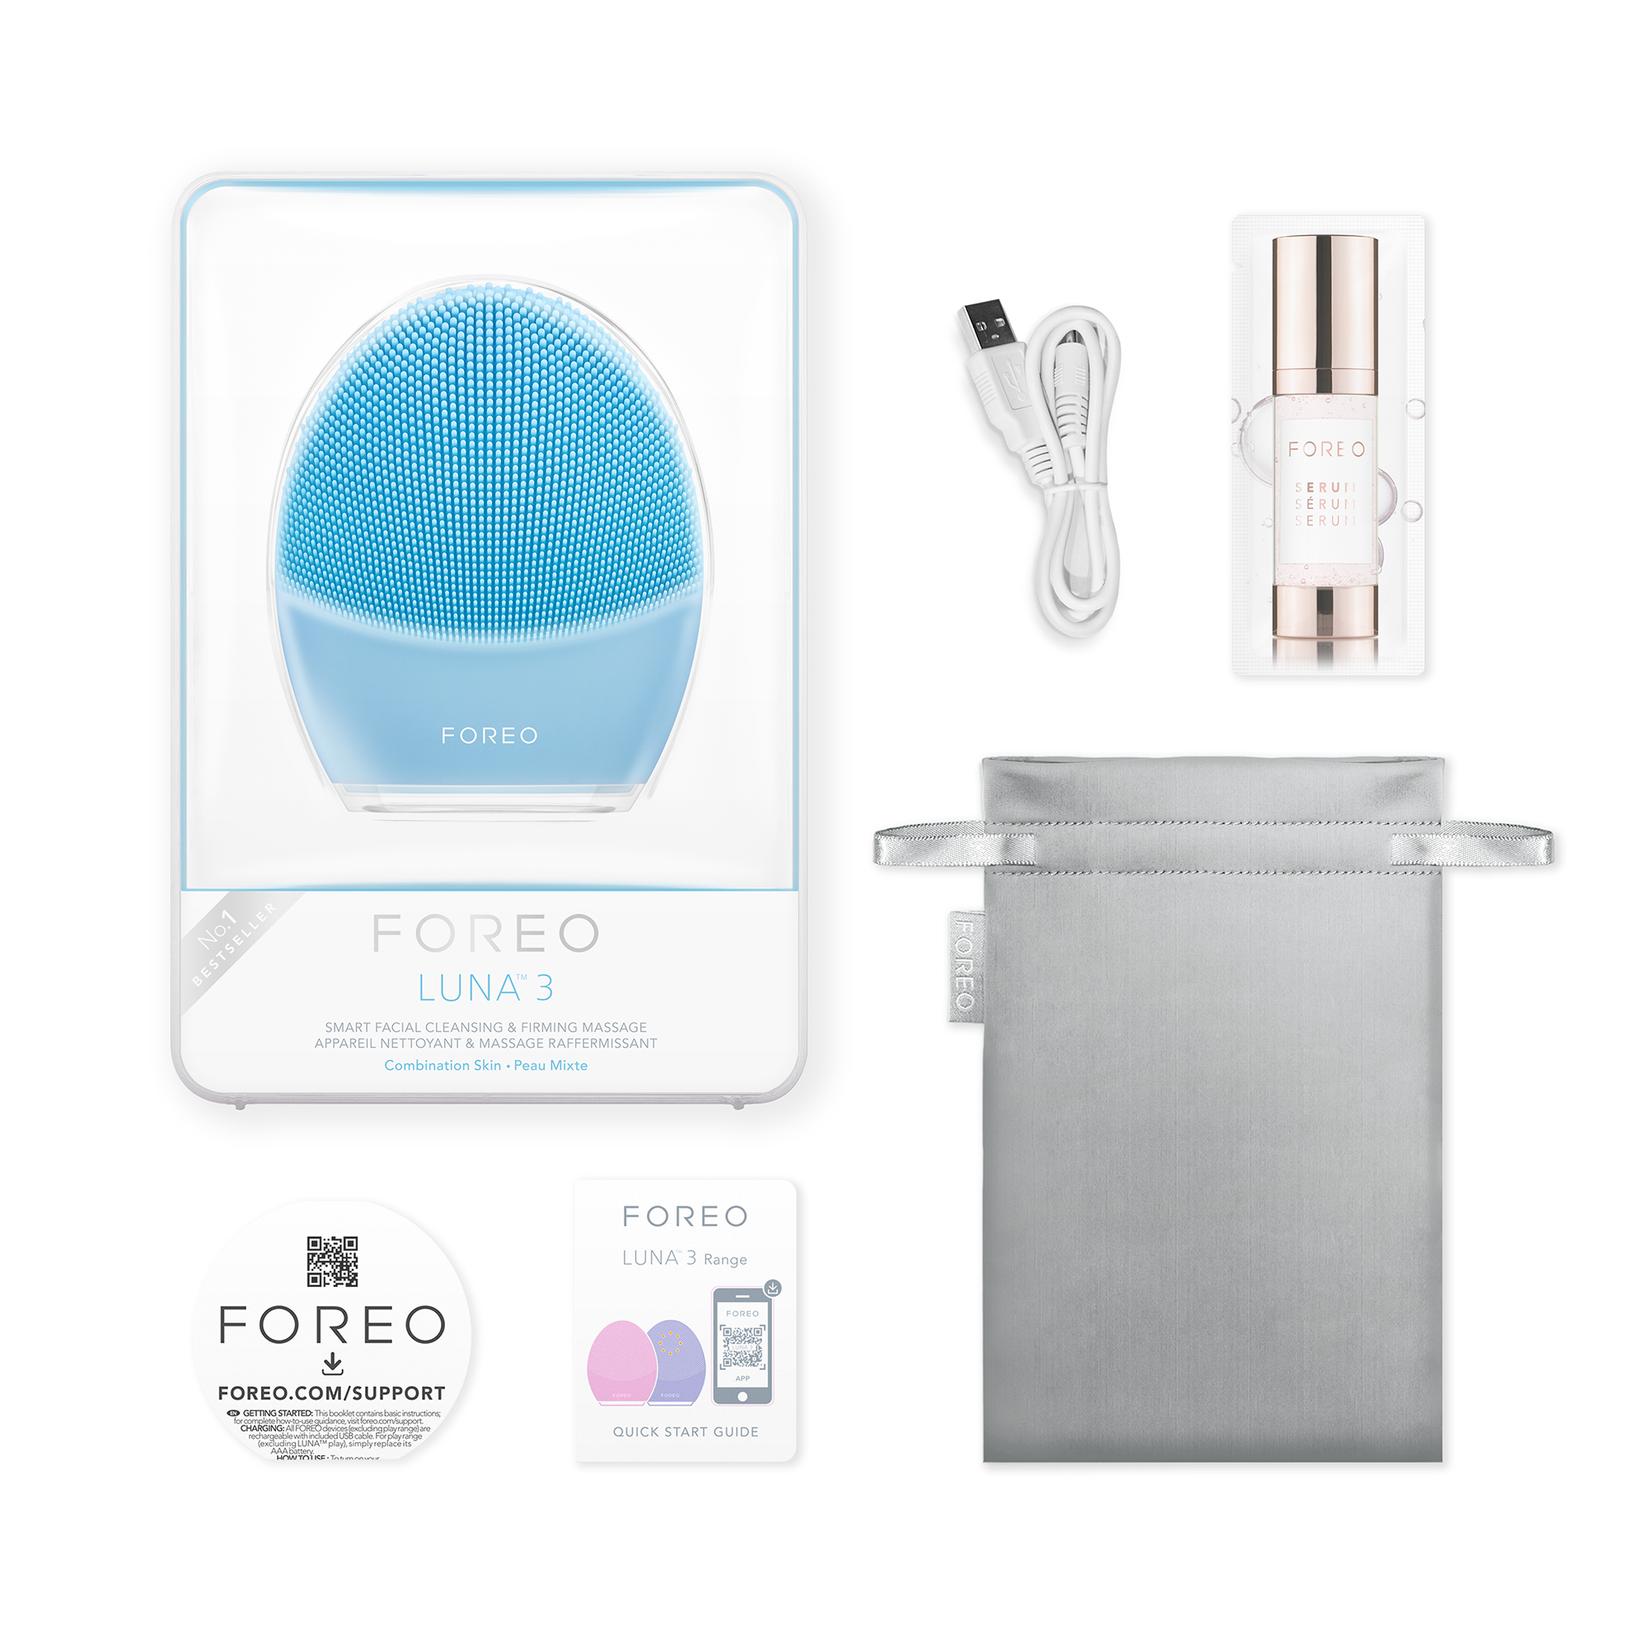 Selected image for FOREO LUNA 3 pametni sonični uređaj i masažer za čišćenje lica za kombinovanu kožu